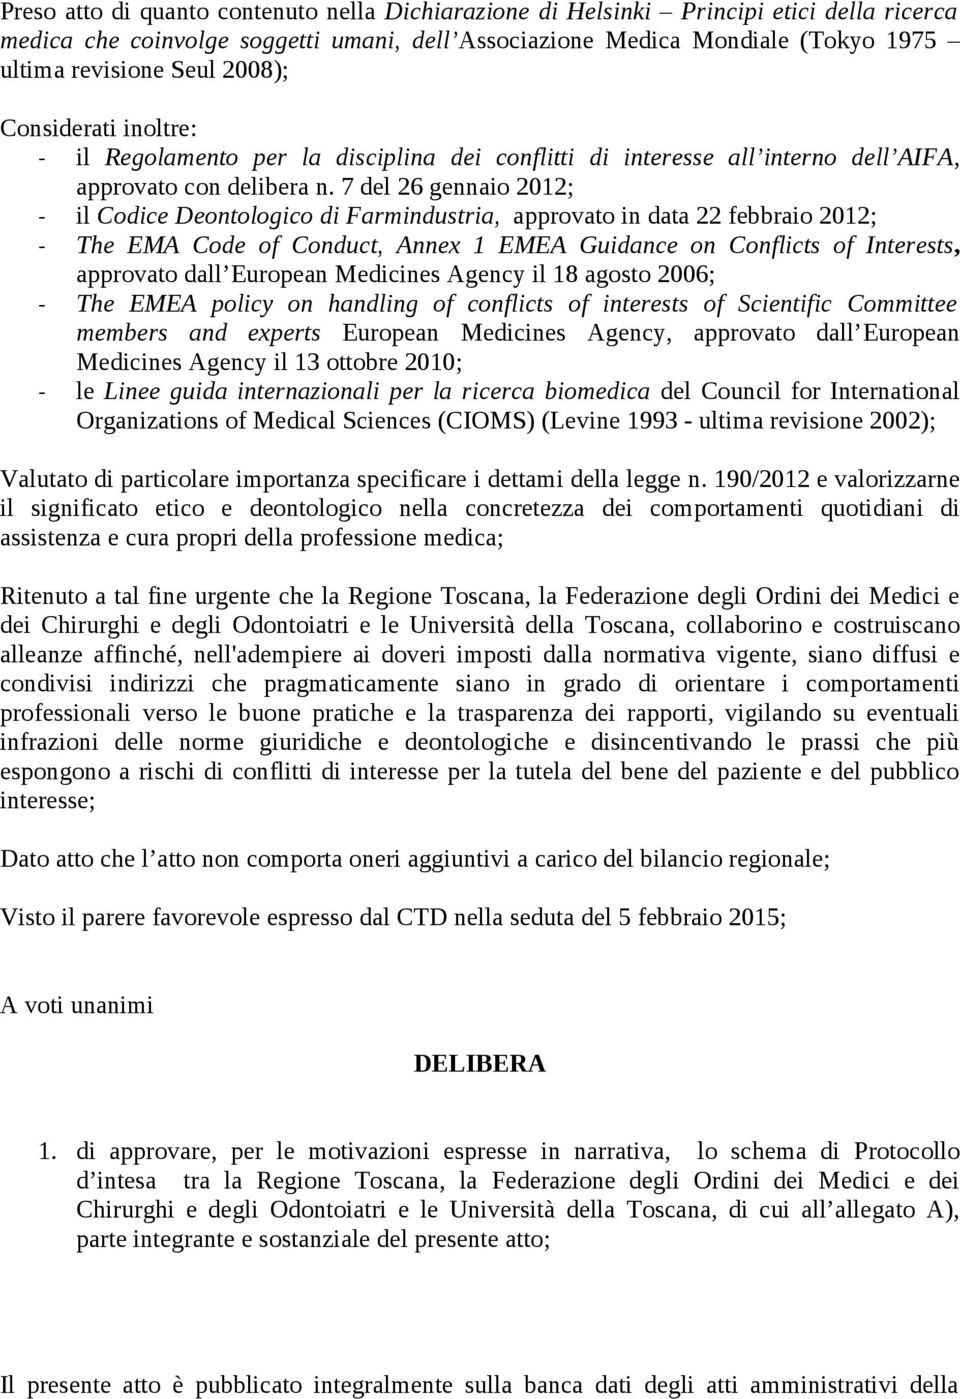 7 del 26 gennaio 2012; - il Codice Deontologico di Farmindustria, approvato in data 22 febbraio 2012; - The EMA Code of Conduct, Annex 1 EMEA Guidance on Conflicts of Interests, approvato dall